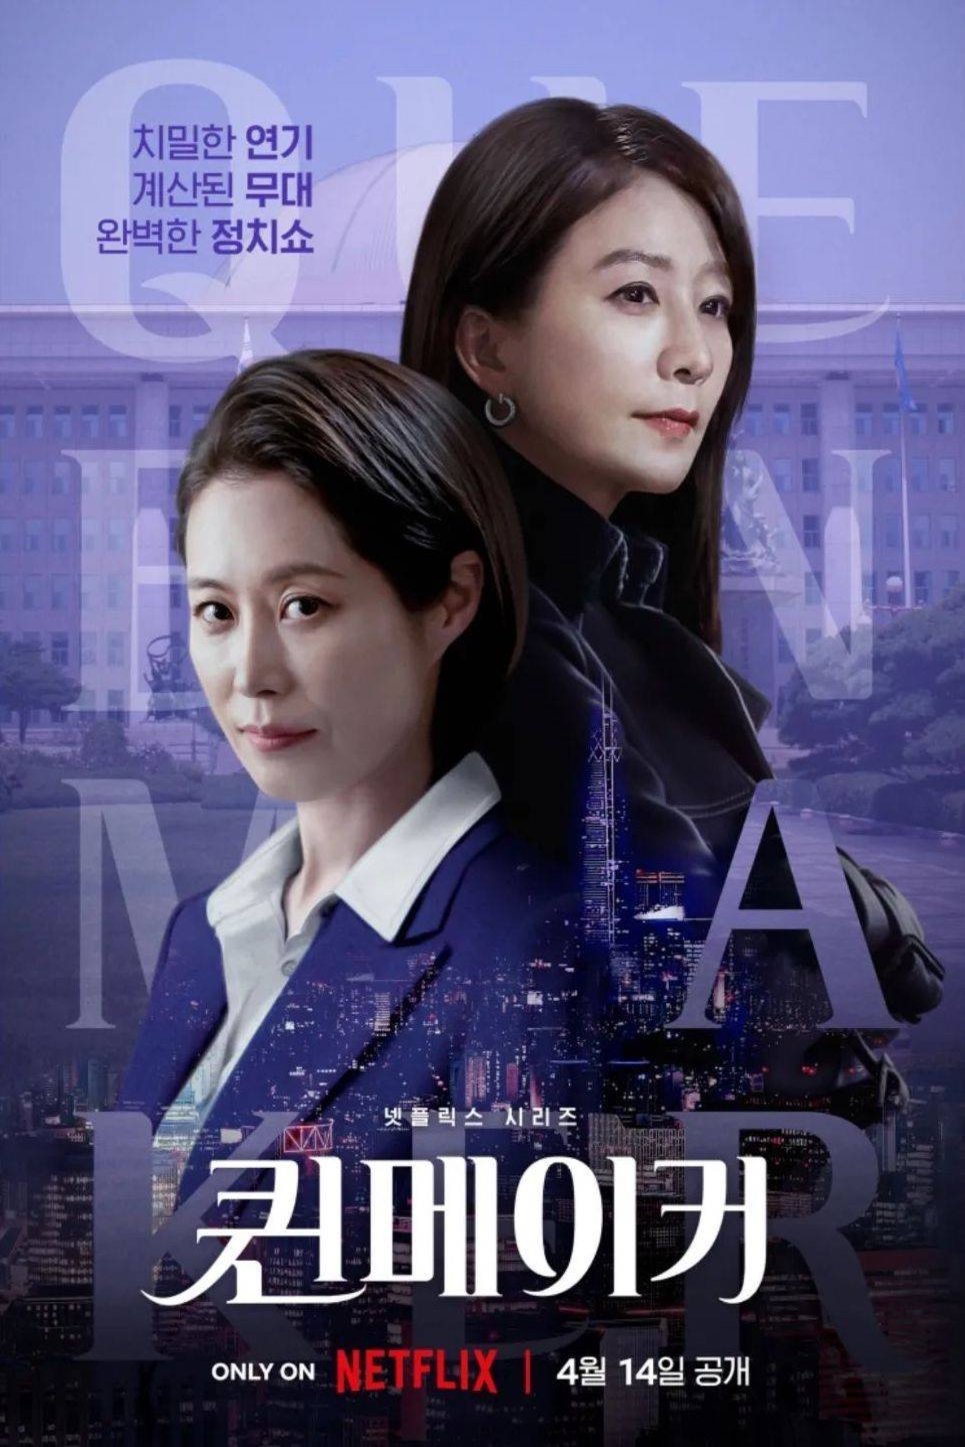 Korean poster of the movie Queenmaker